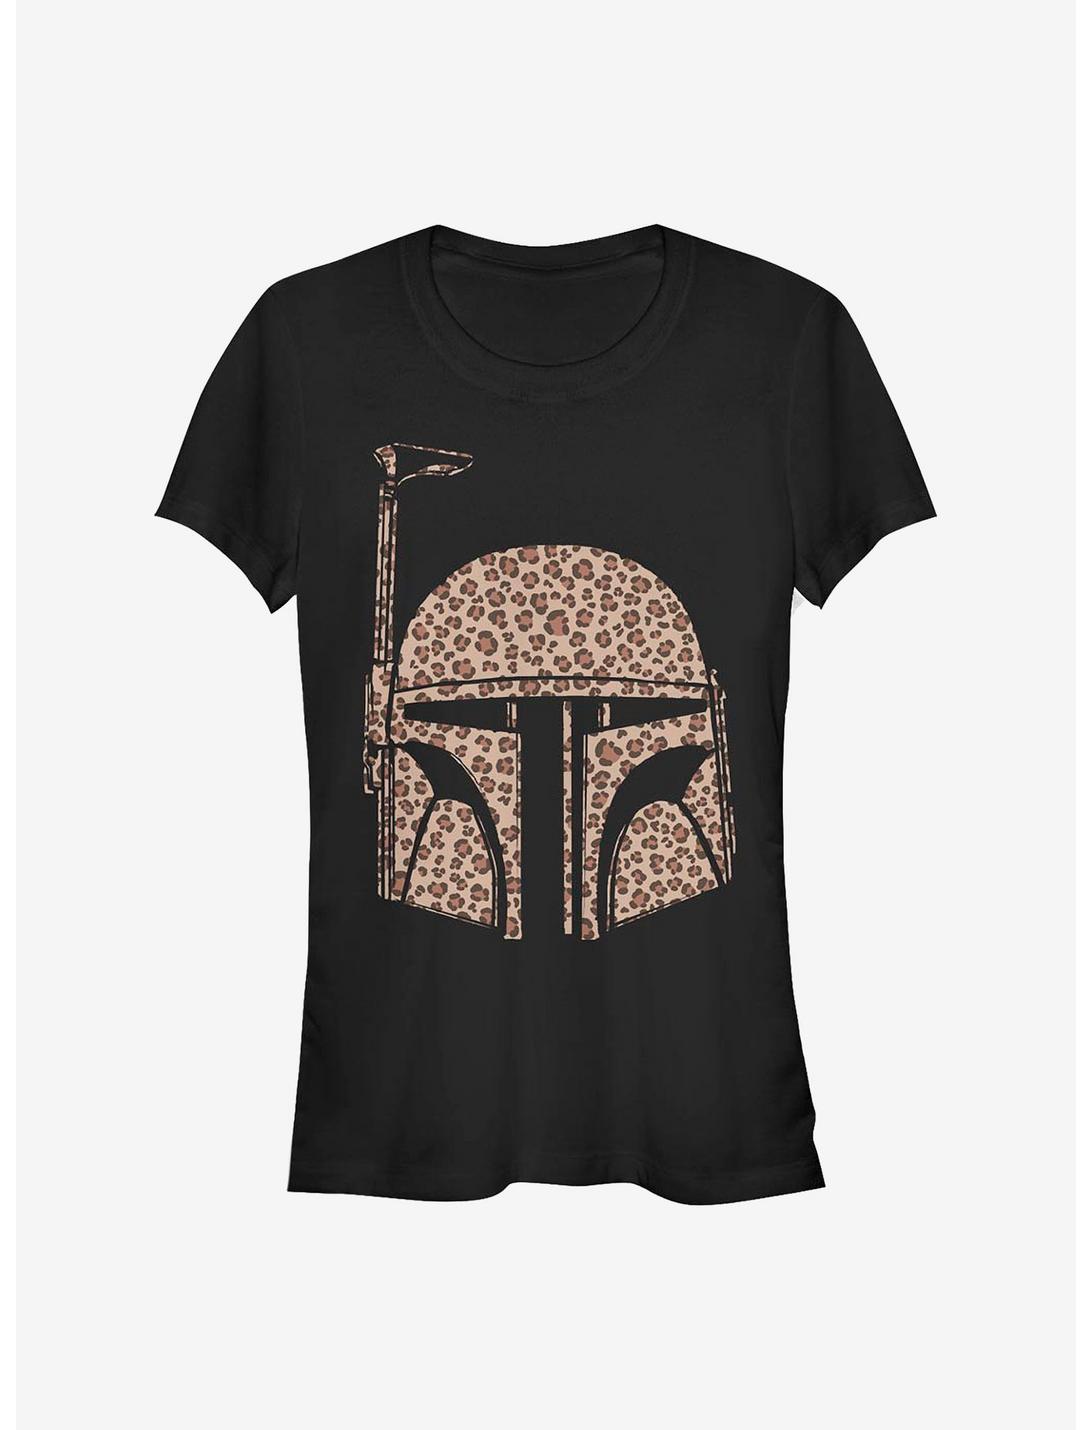 Star Wars Boba Fett Cheetah Girls T-Shirt, BLACK, hi-res